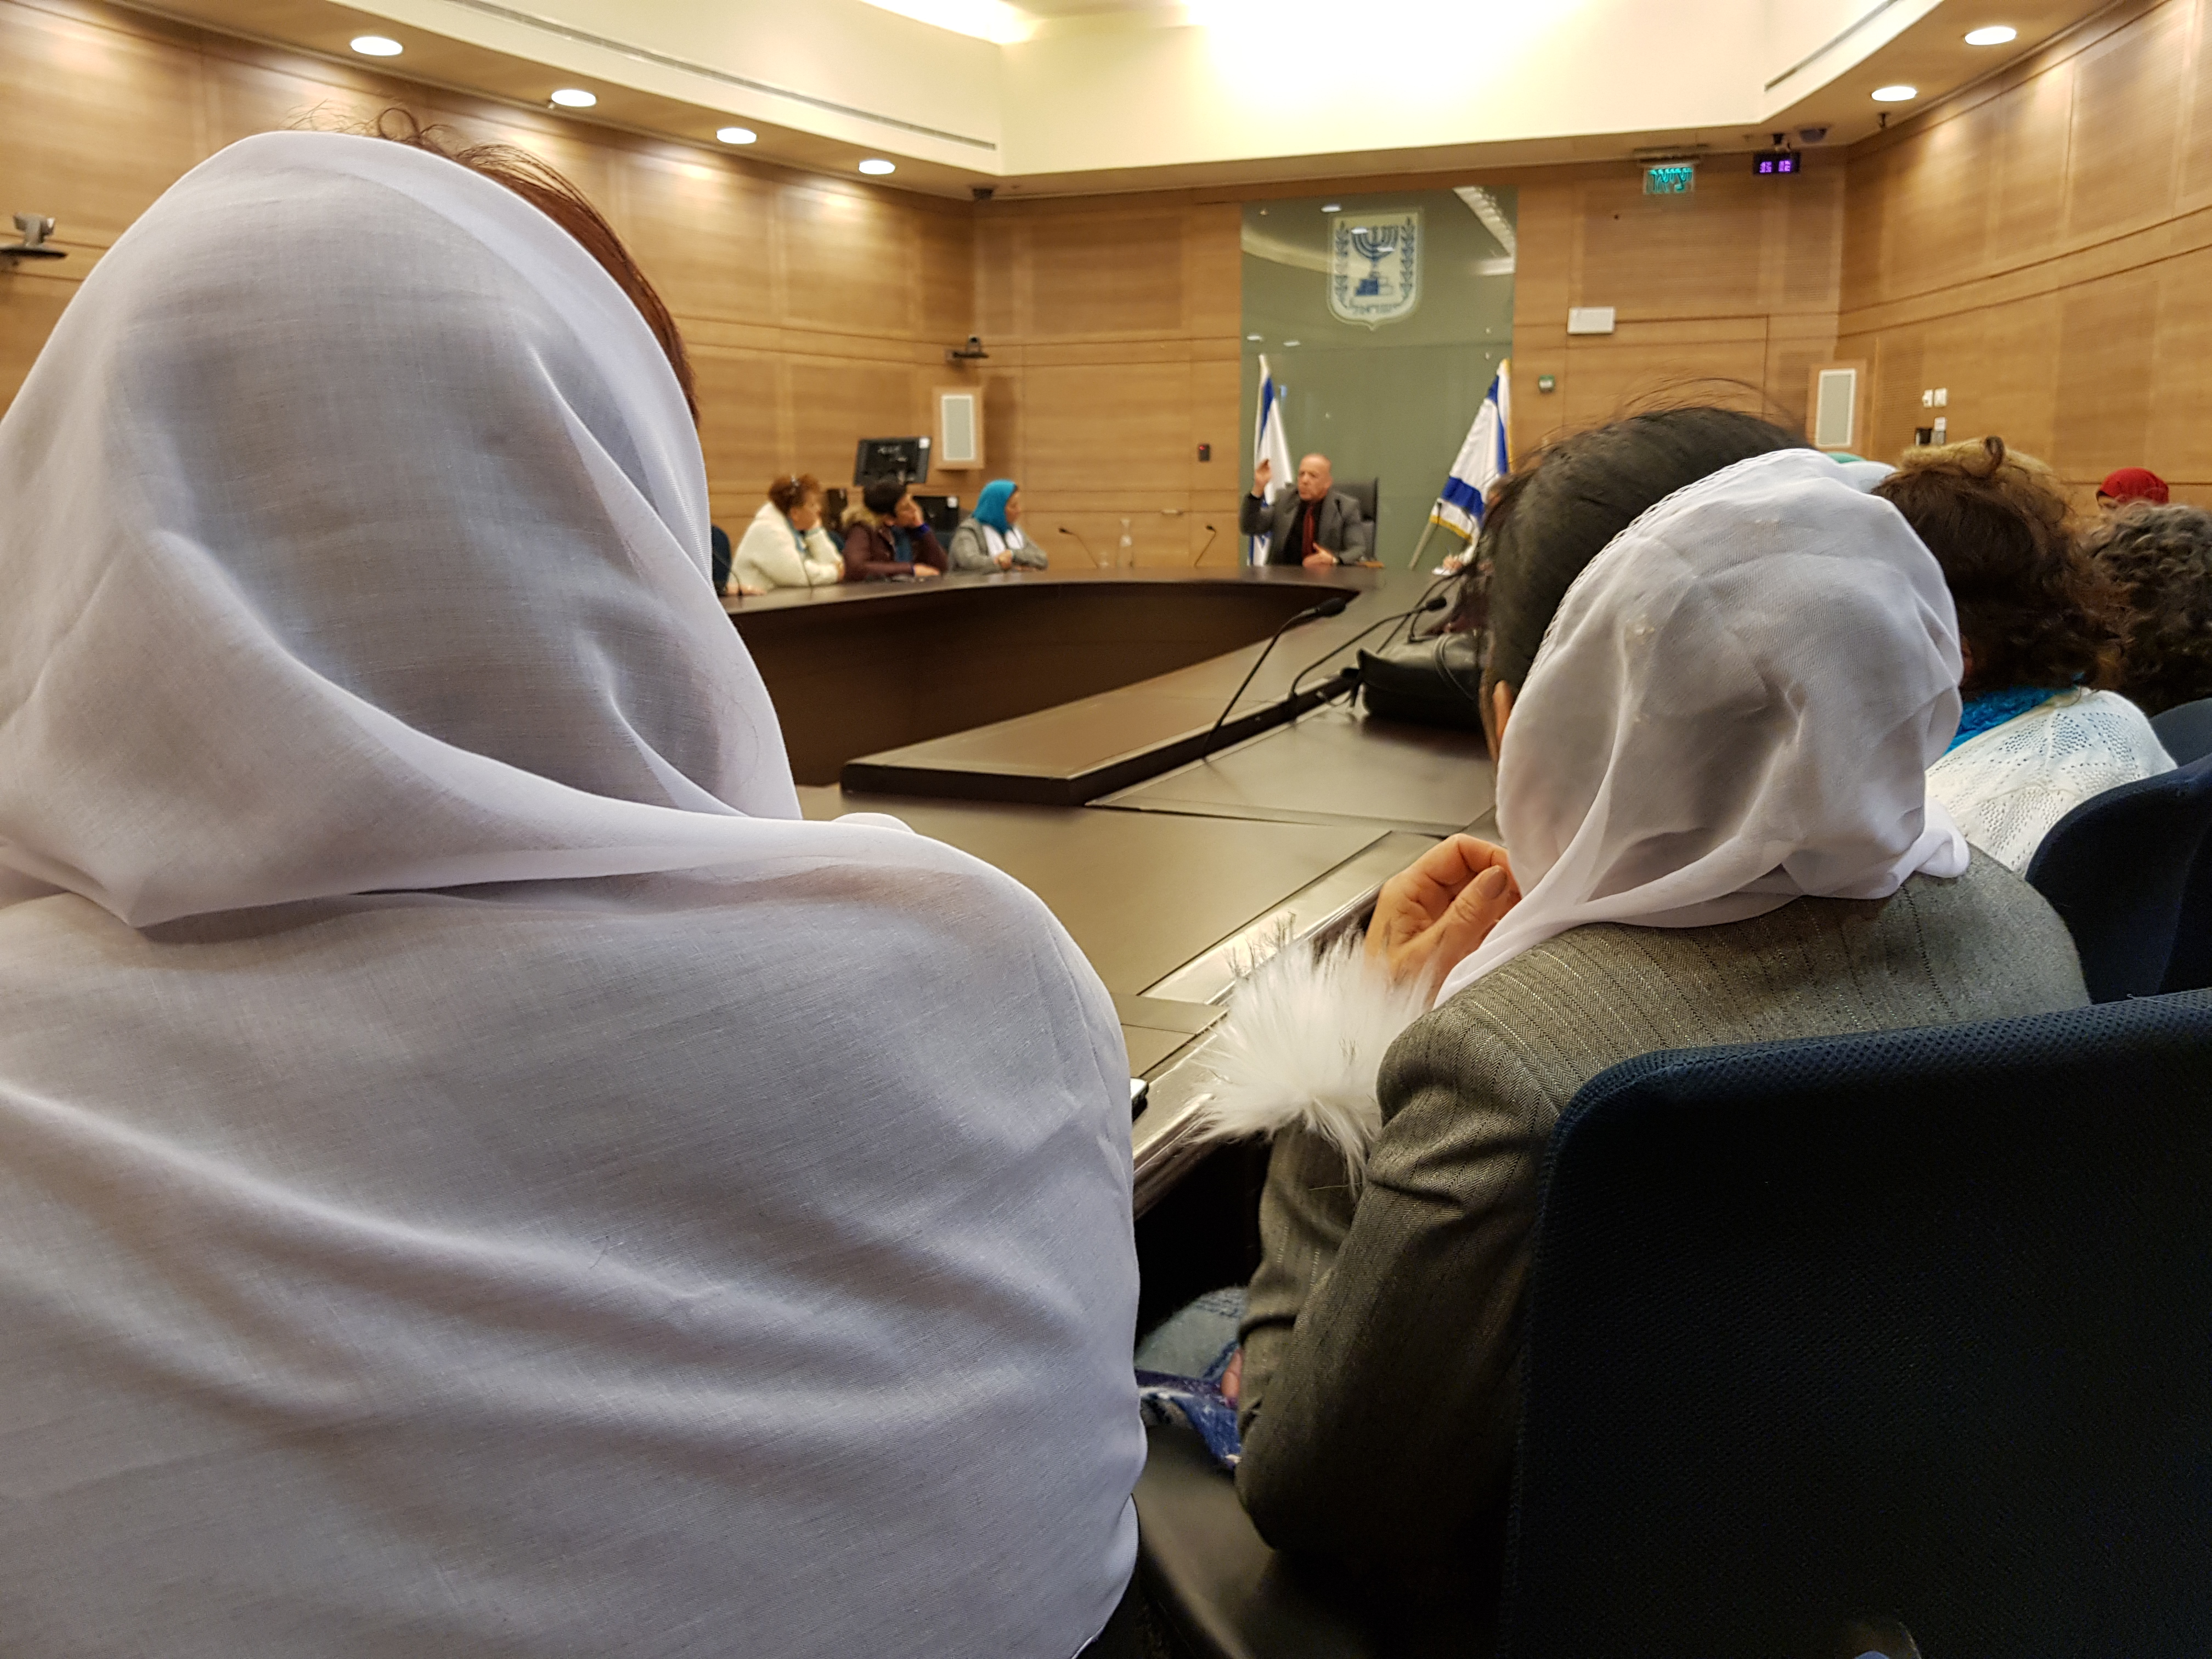 النائب أكرم حسون يستضيف جمعية نساء يصنعن السلام بالكنيست!